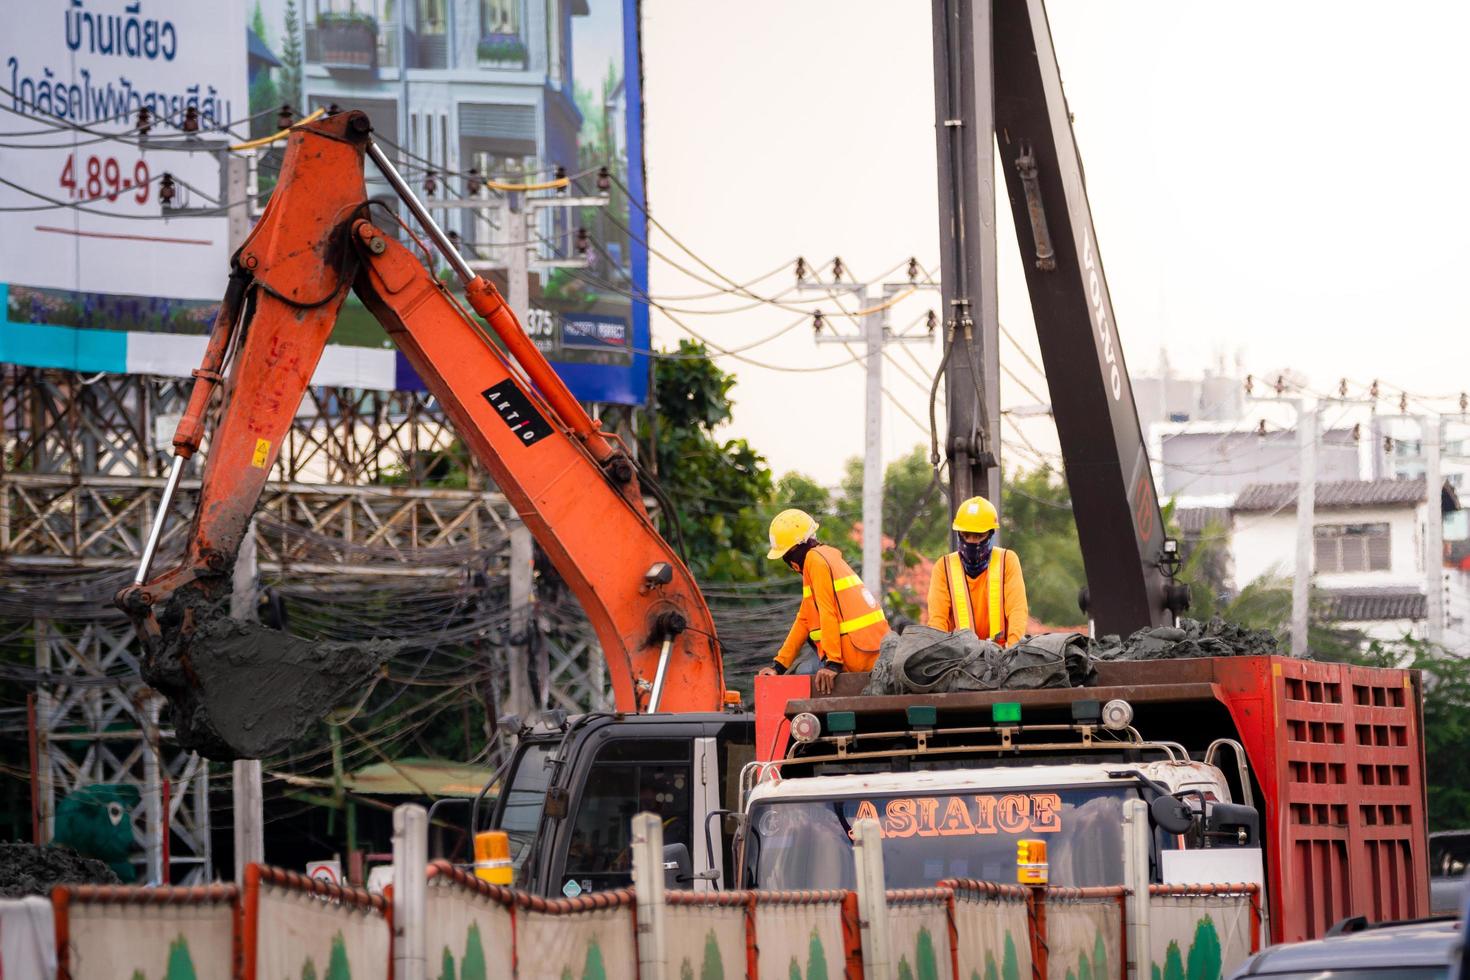 bangkok thaïlande 9 octobre 2019 - deux contremaîtres se tenaient sur le camion, ils portaient des casques jaunes, portaient des chemises à manches longues orange deux excavatrices travaillent sur la sécurité des grandes machines industrielles au travail photo